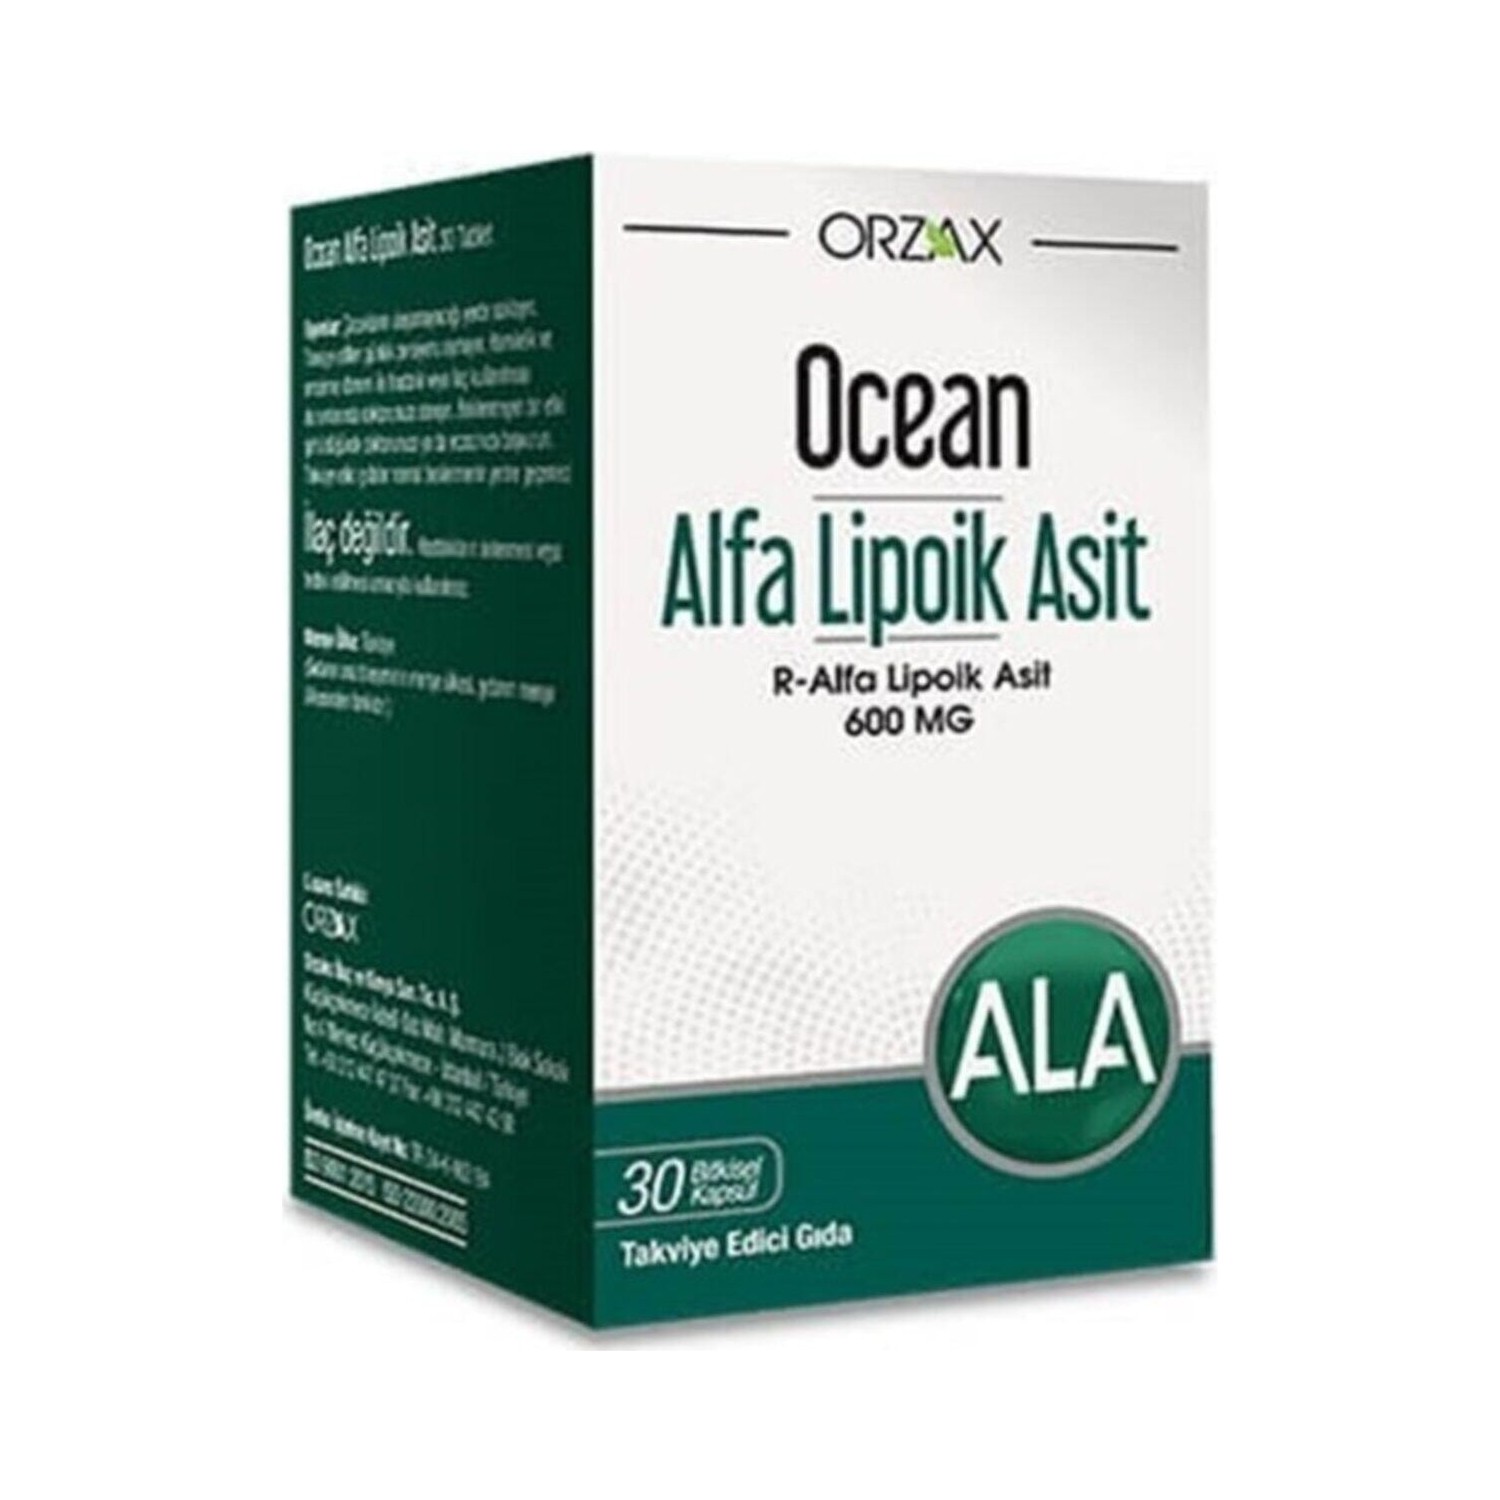 биологически активная добавка solgar alpha lipoic acid 60 mg в капсулах 30 шт Альфа-липоевая кислота Ocean 30 капсул, 600 мг